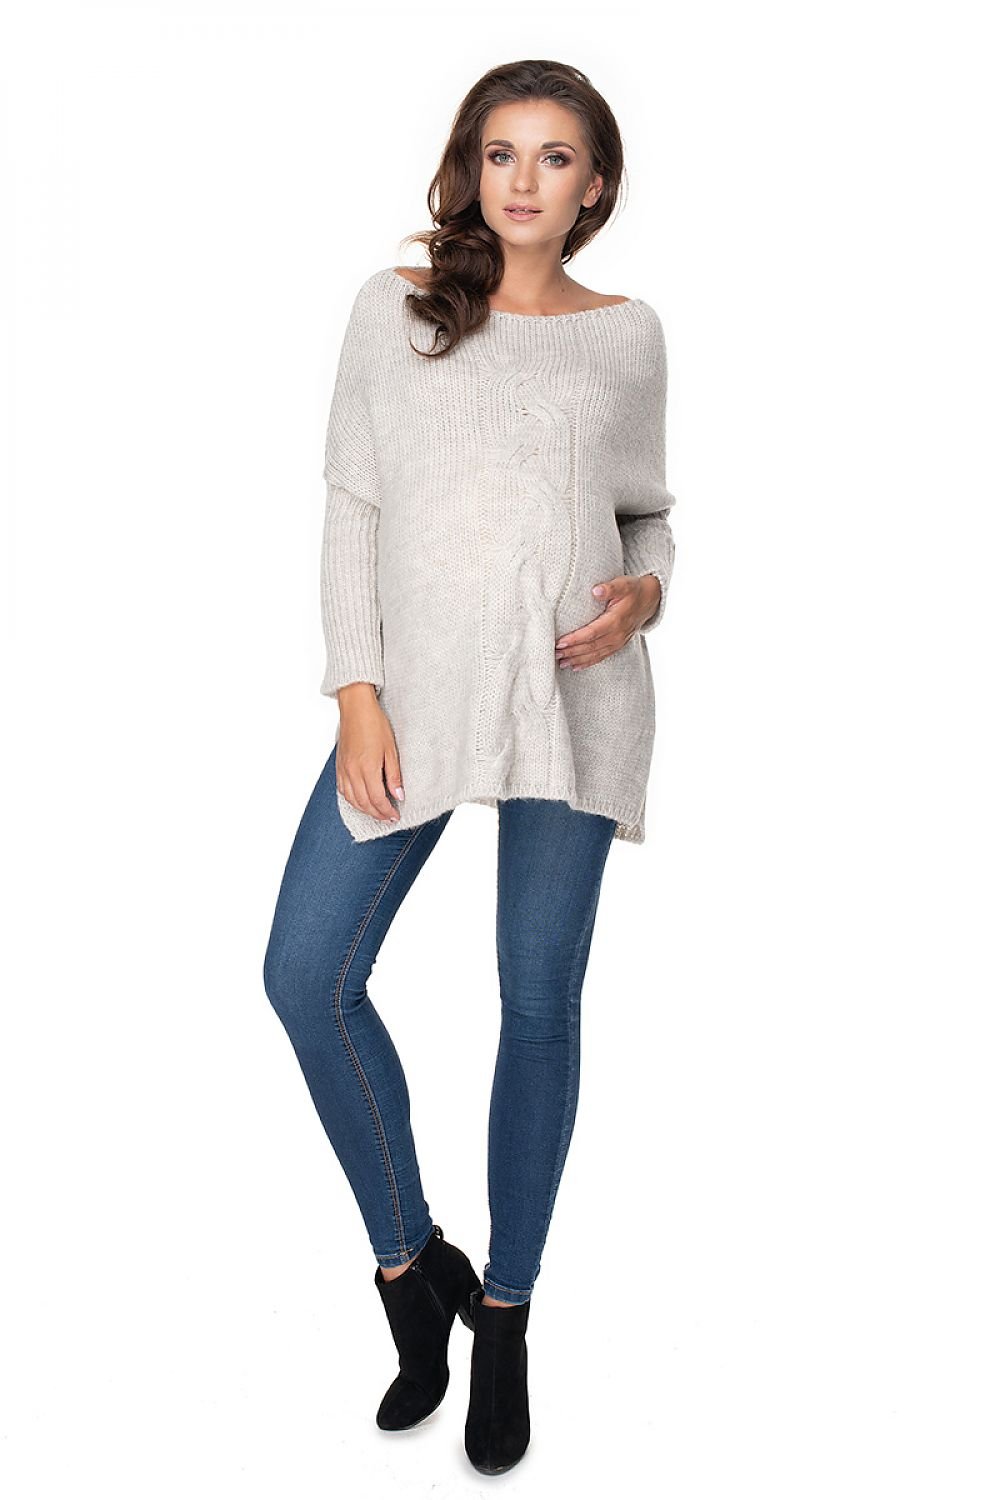 Pregnancy sweater model 135981 PeeKaBoo